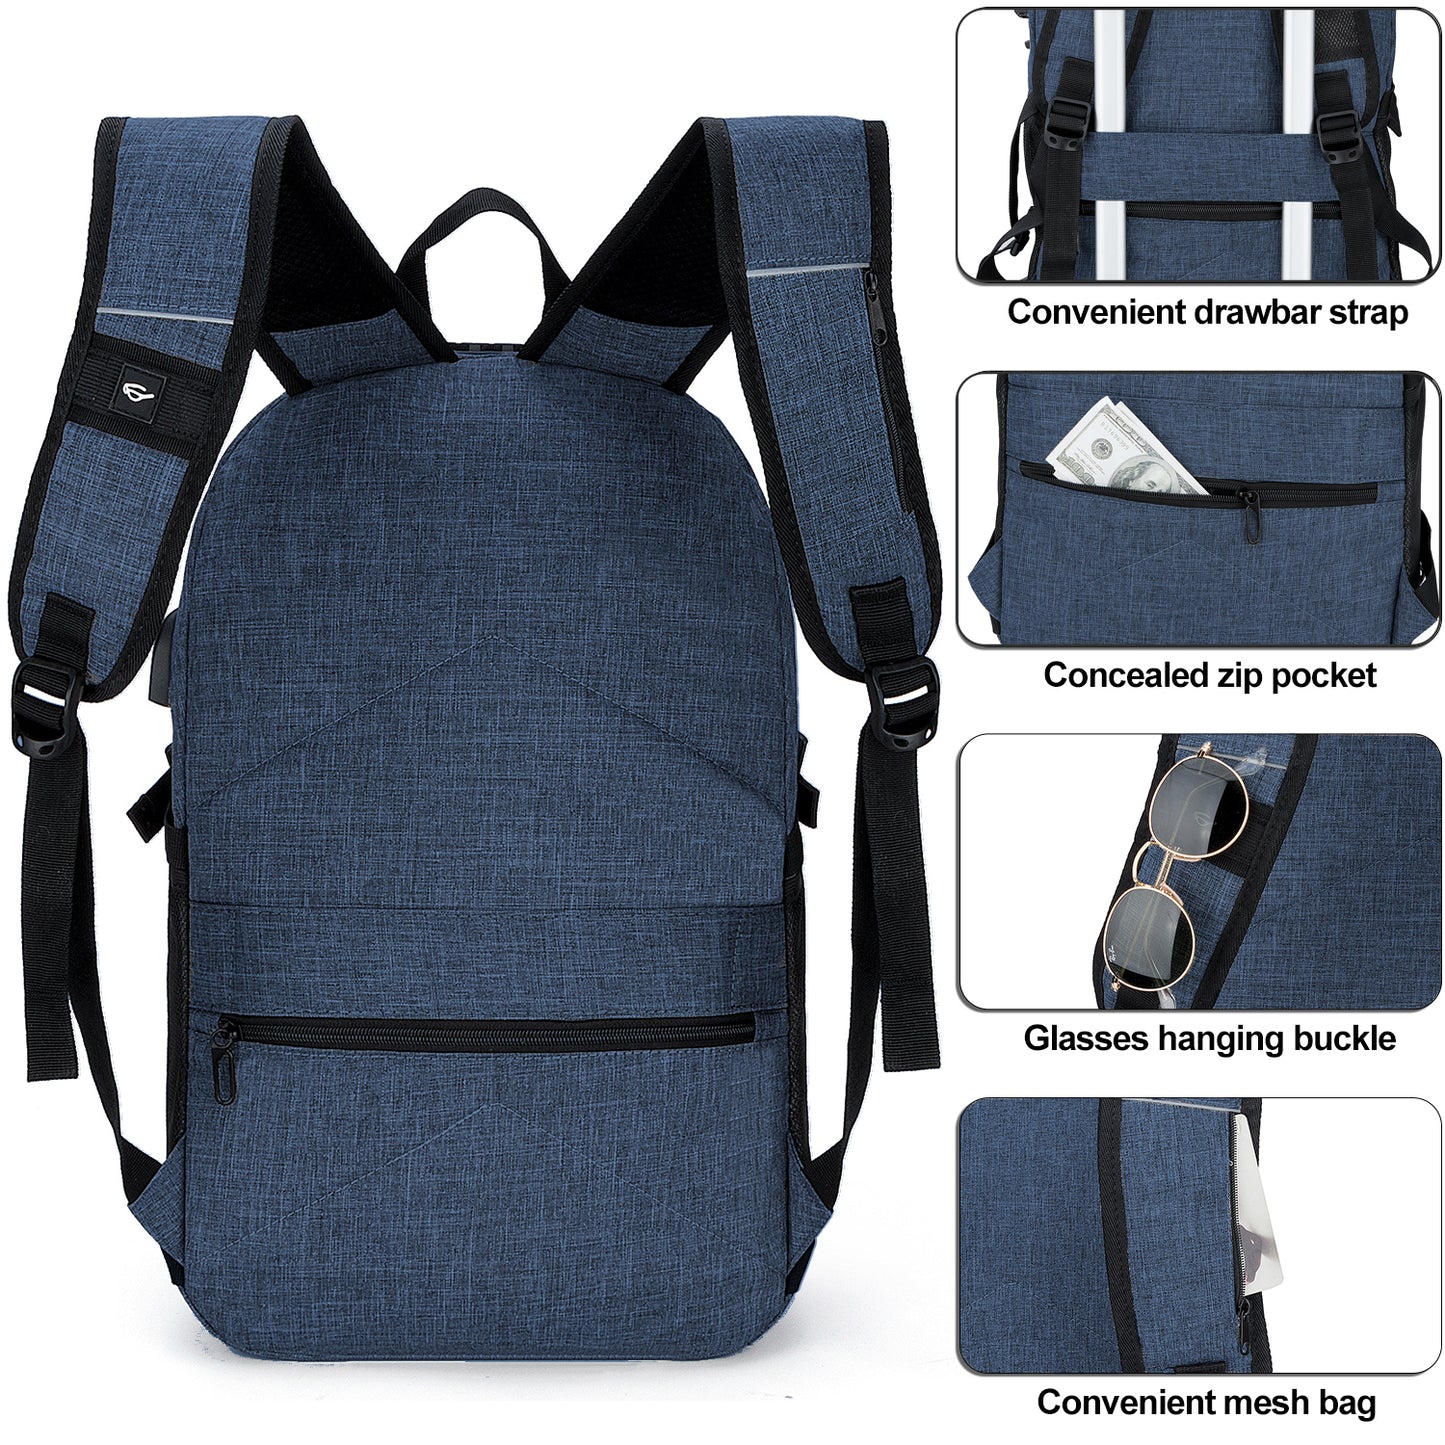 IGOLUMON Mochila Mujer Para Ordenador Portatil 15.6 Pulgadas Impermeable  Mochila Daypacks con Puerto USB Mochila para Universidad Trabajo Viaja